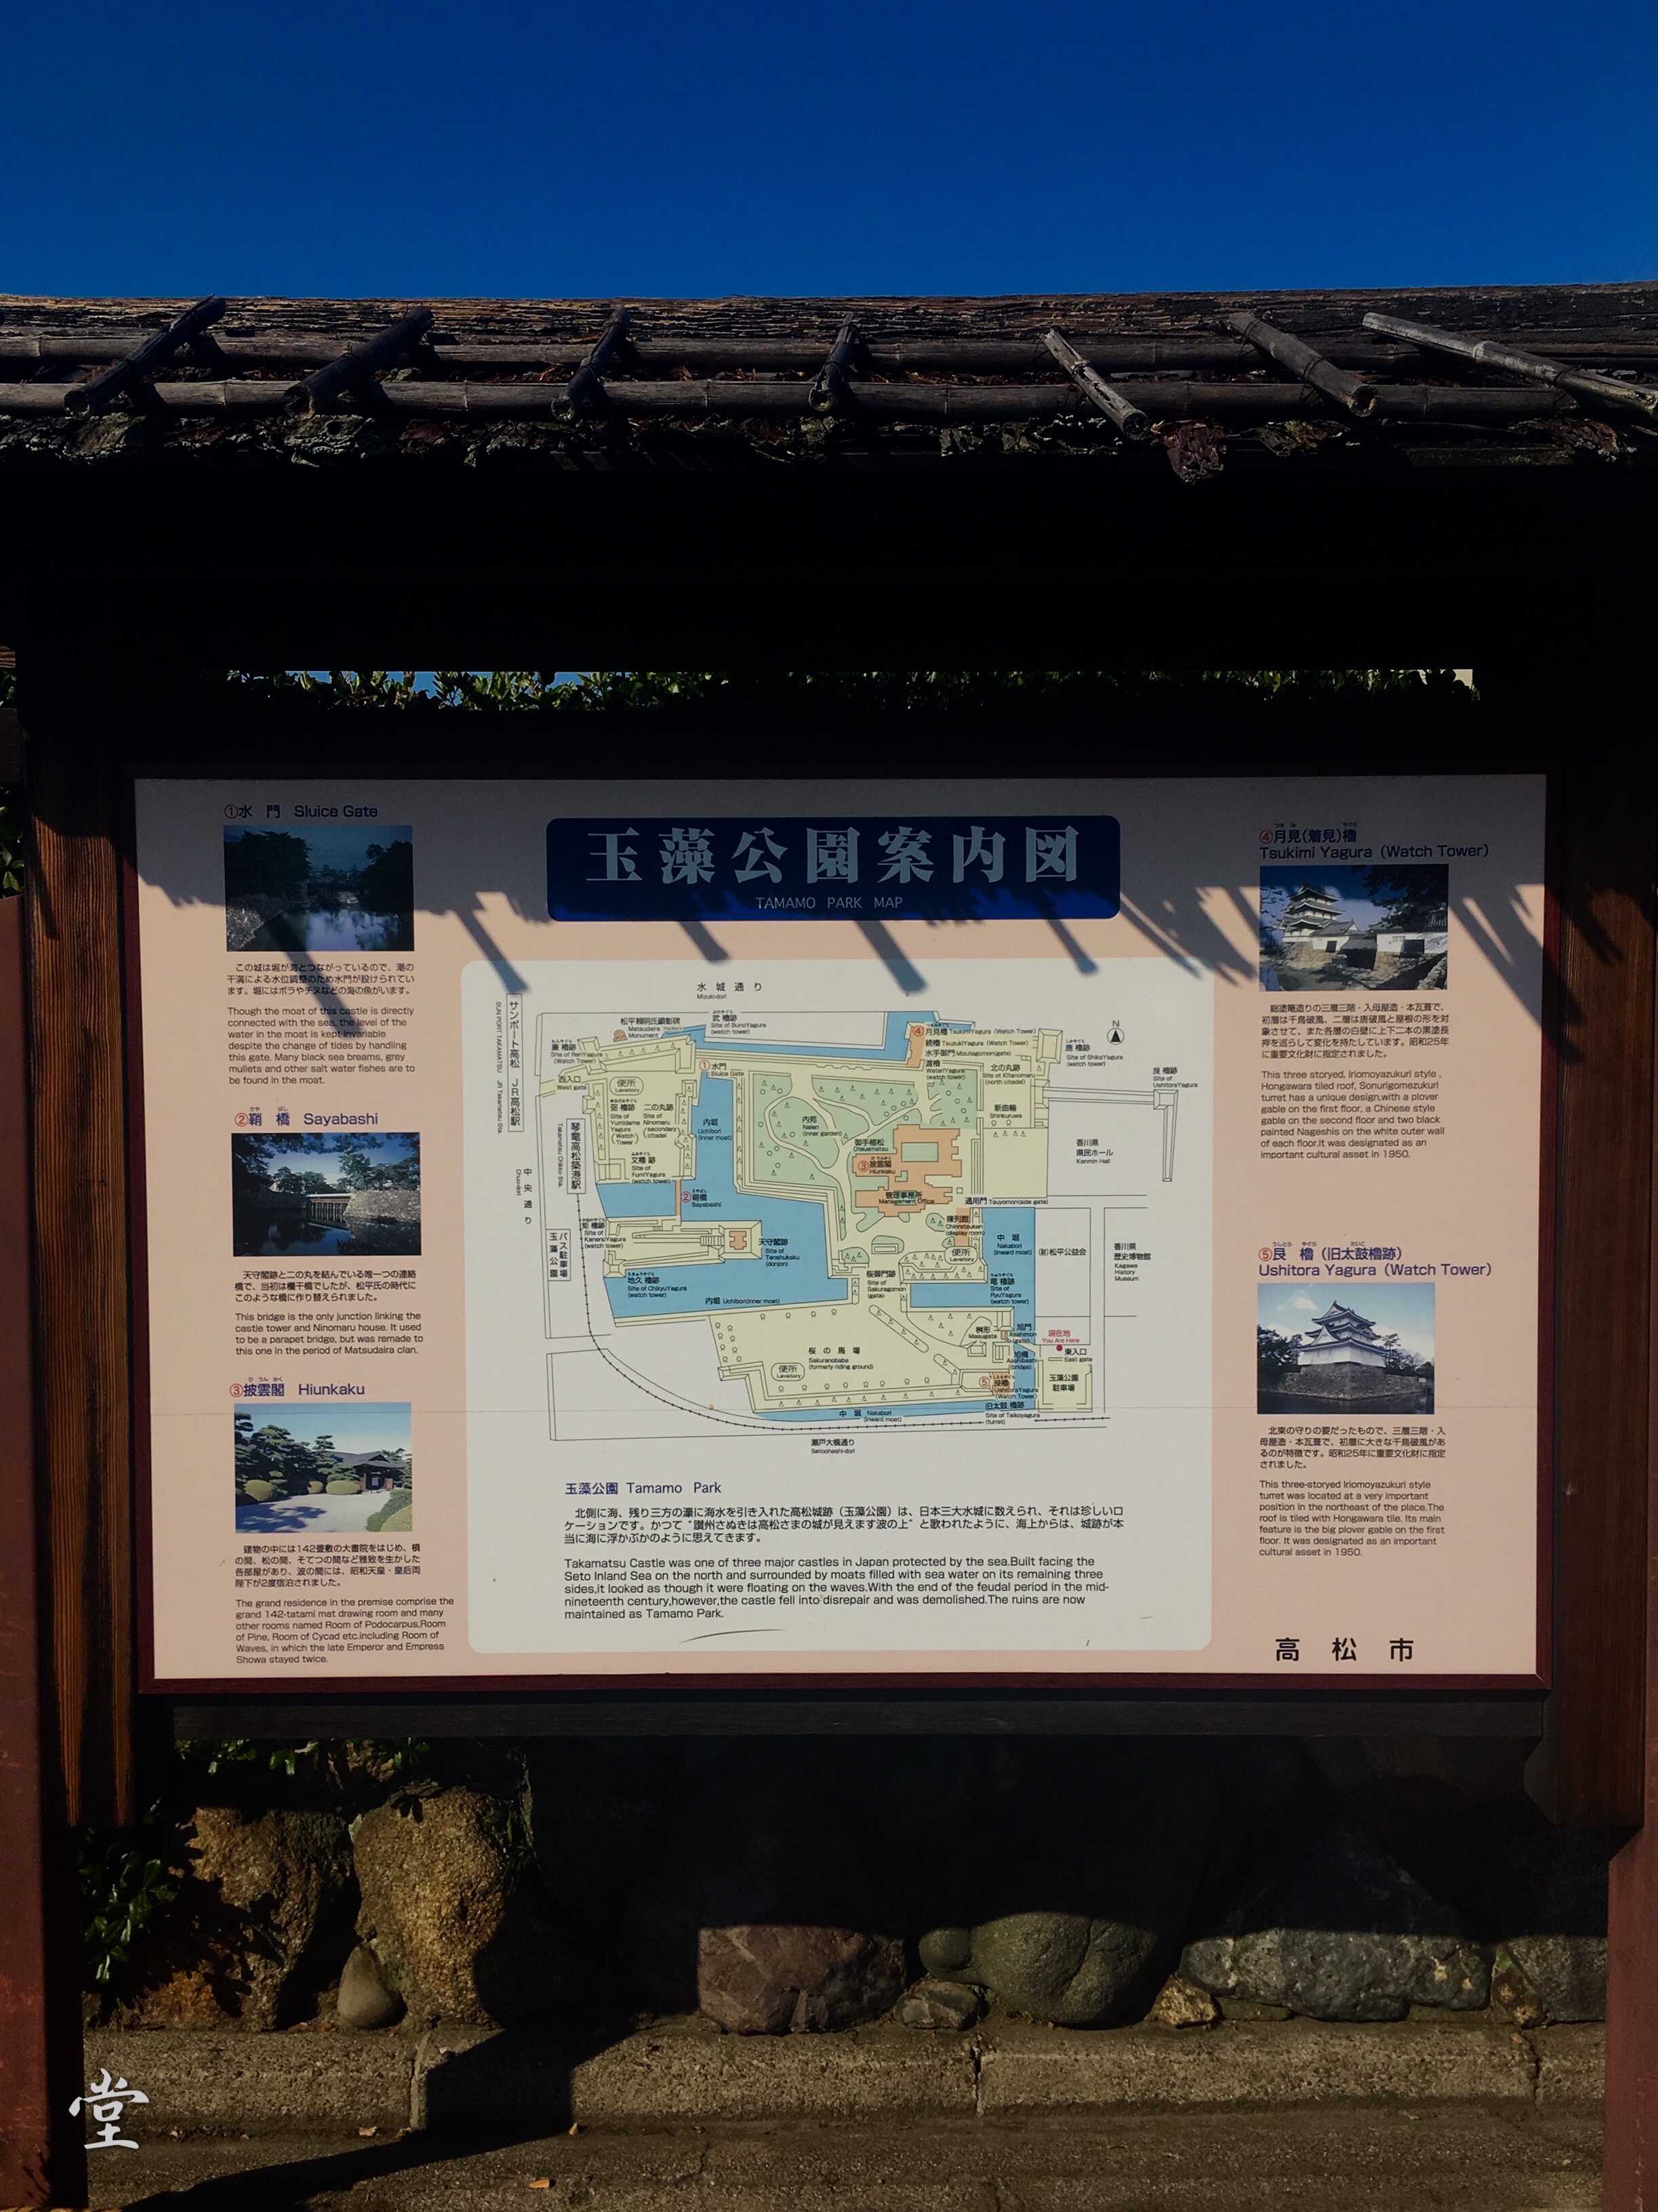 玉藻公园传说是日本三大水城之一，一看到这个介绍，脑子里就浮现出“信长野望”，“九鬼嘉隆”，哈哈，游戏